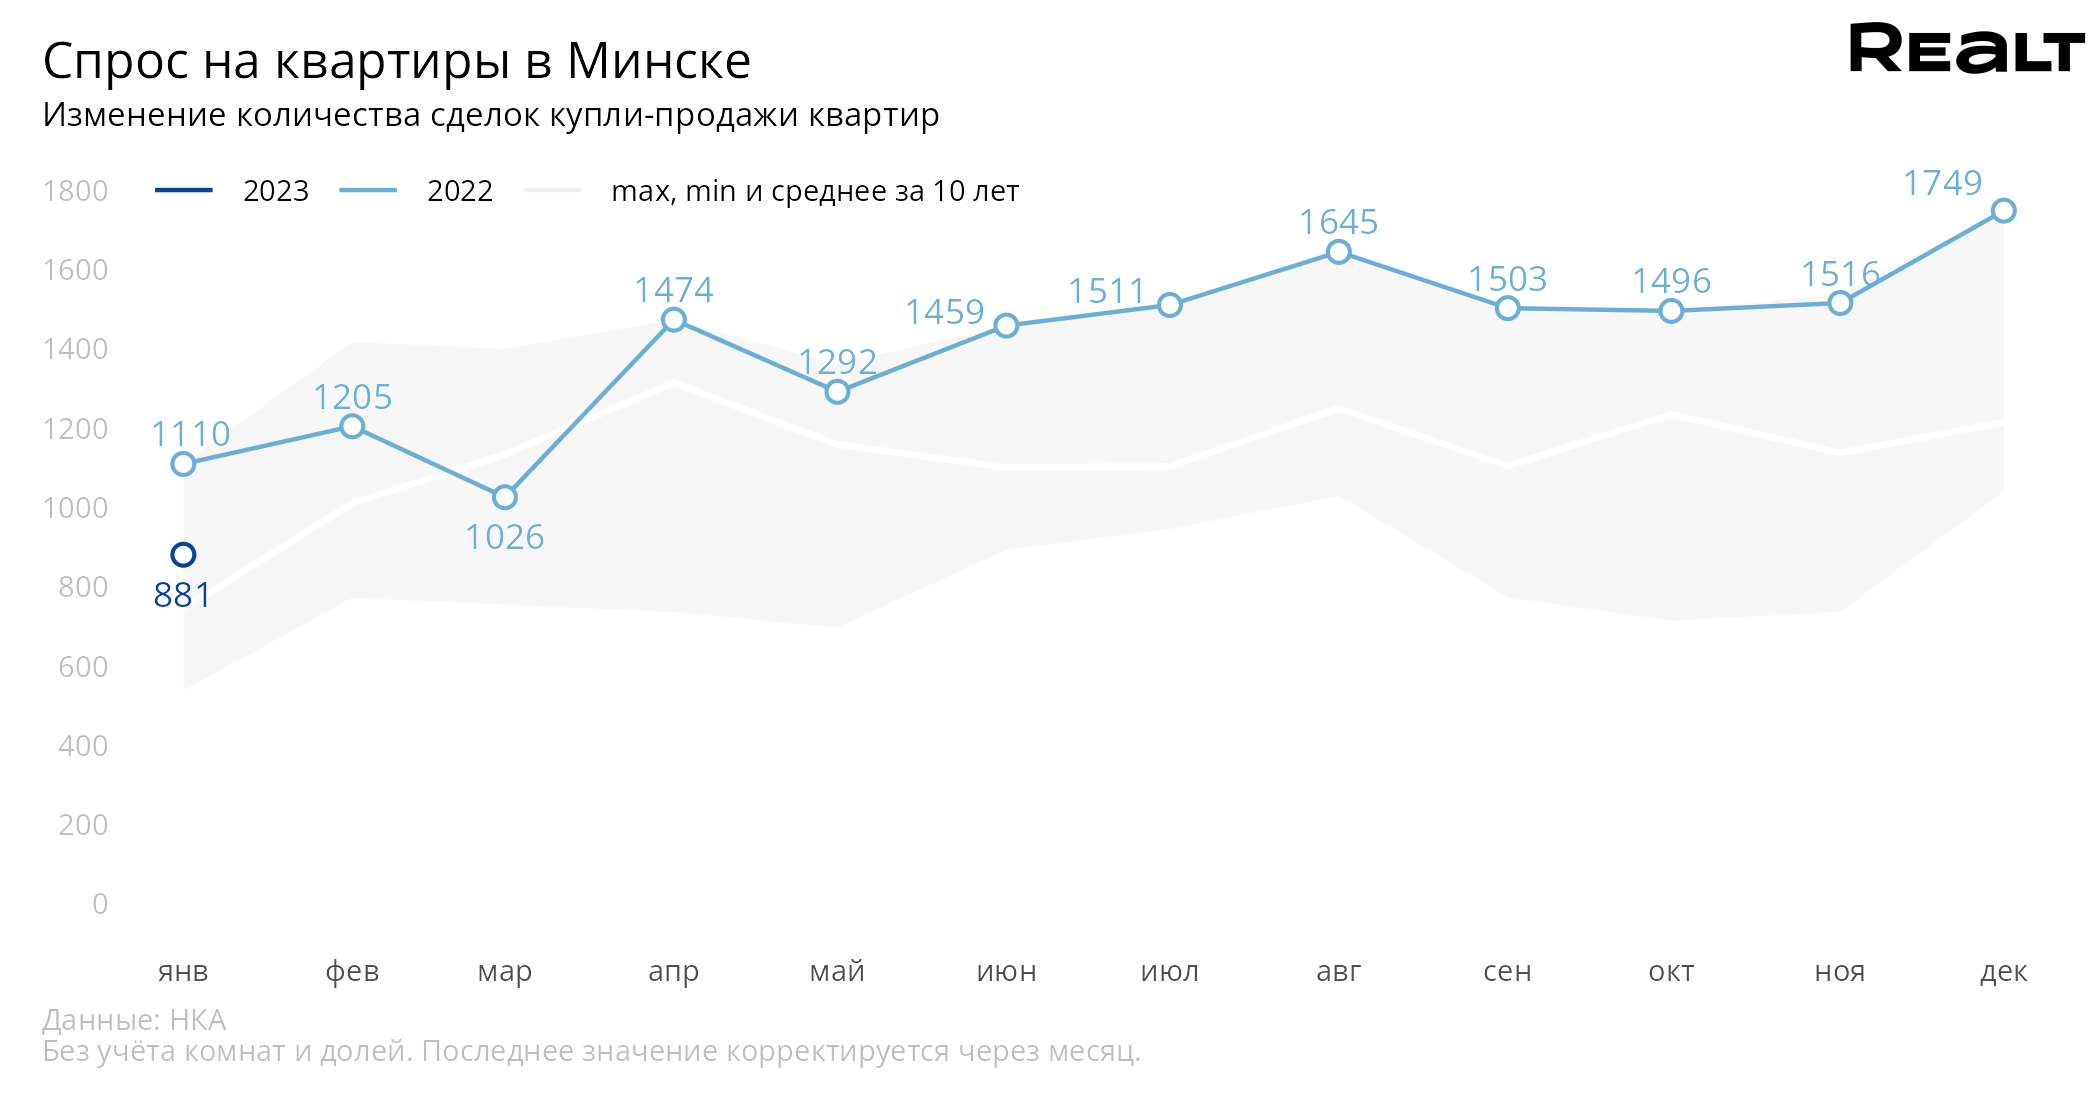 Рассказываем, какие квартиры сейчас покупают в Минске и какие цены в реальных сделках (аналитика Realt)